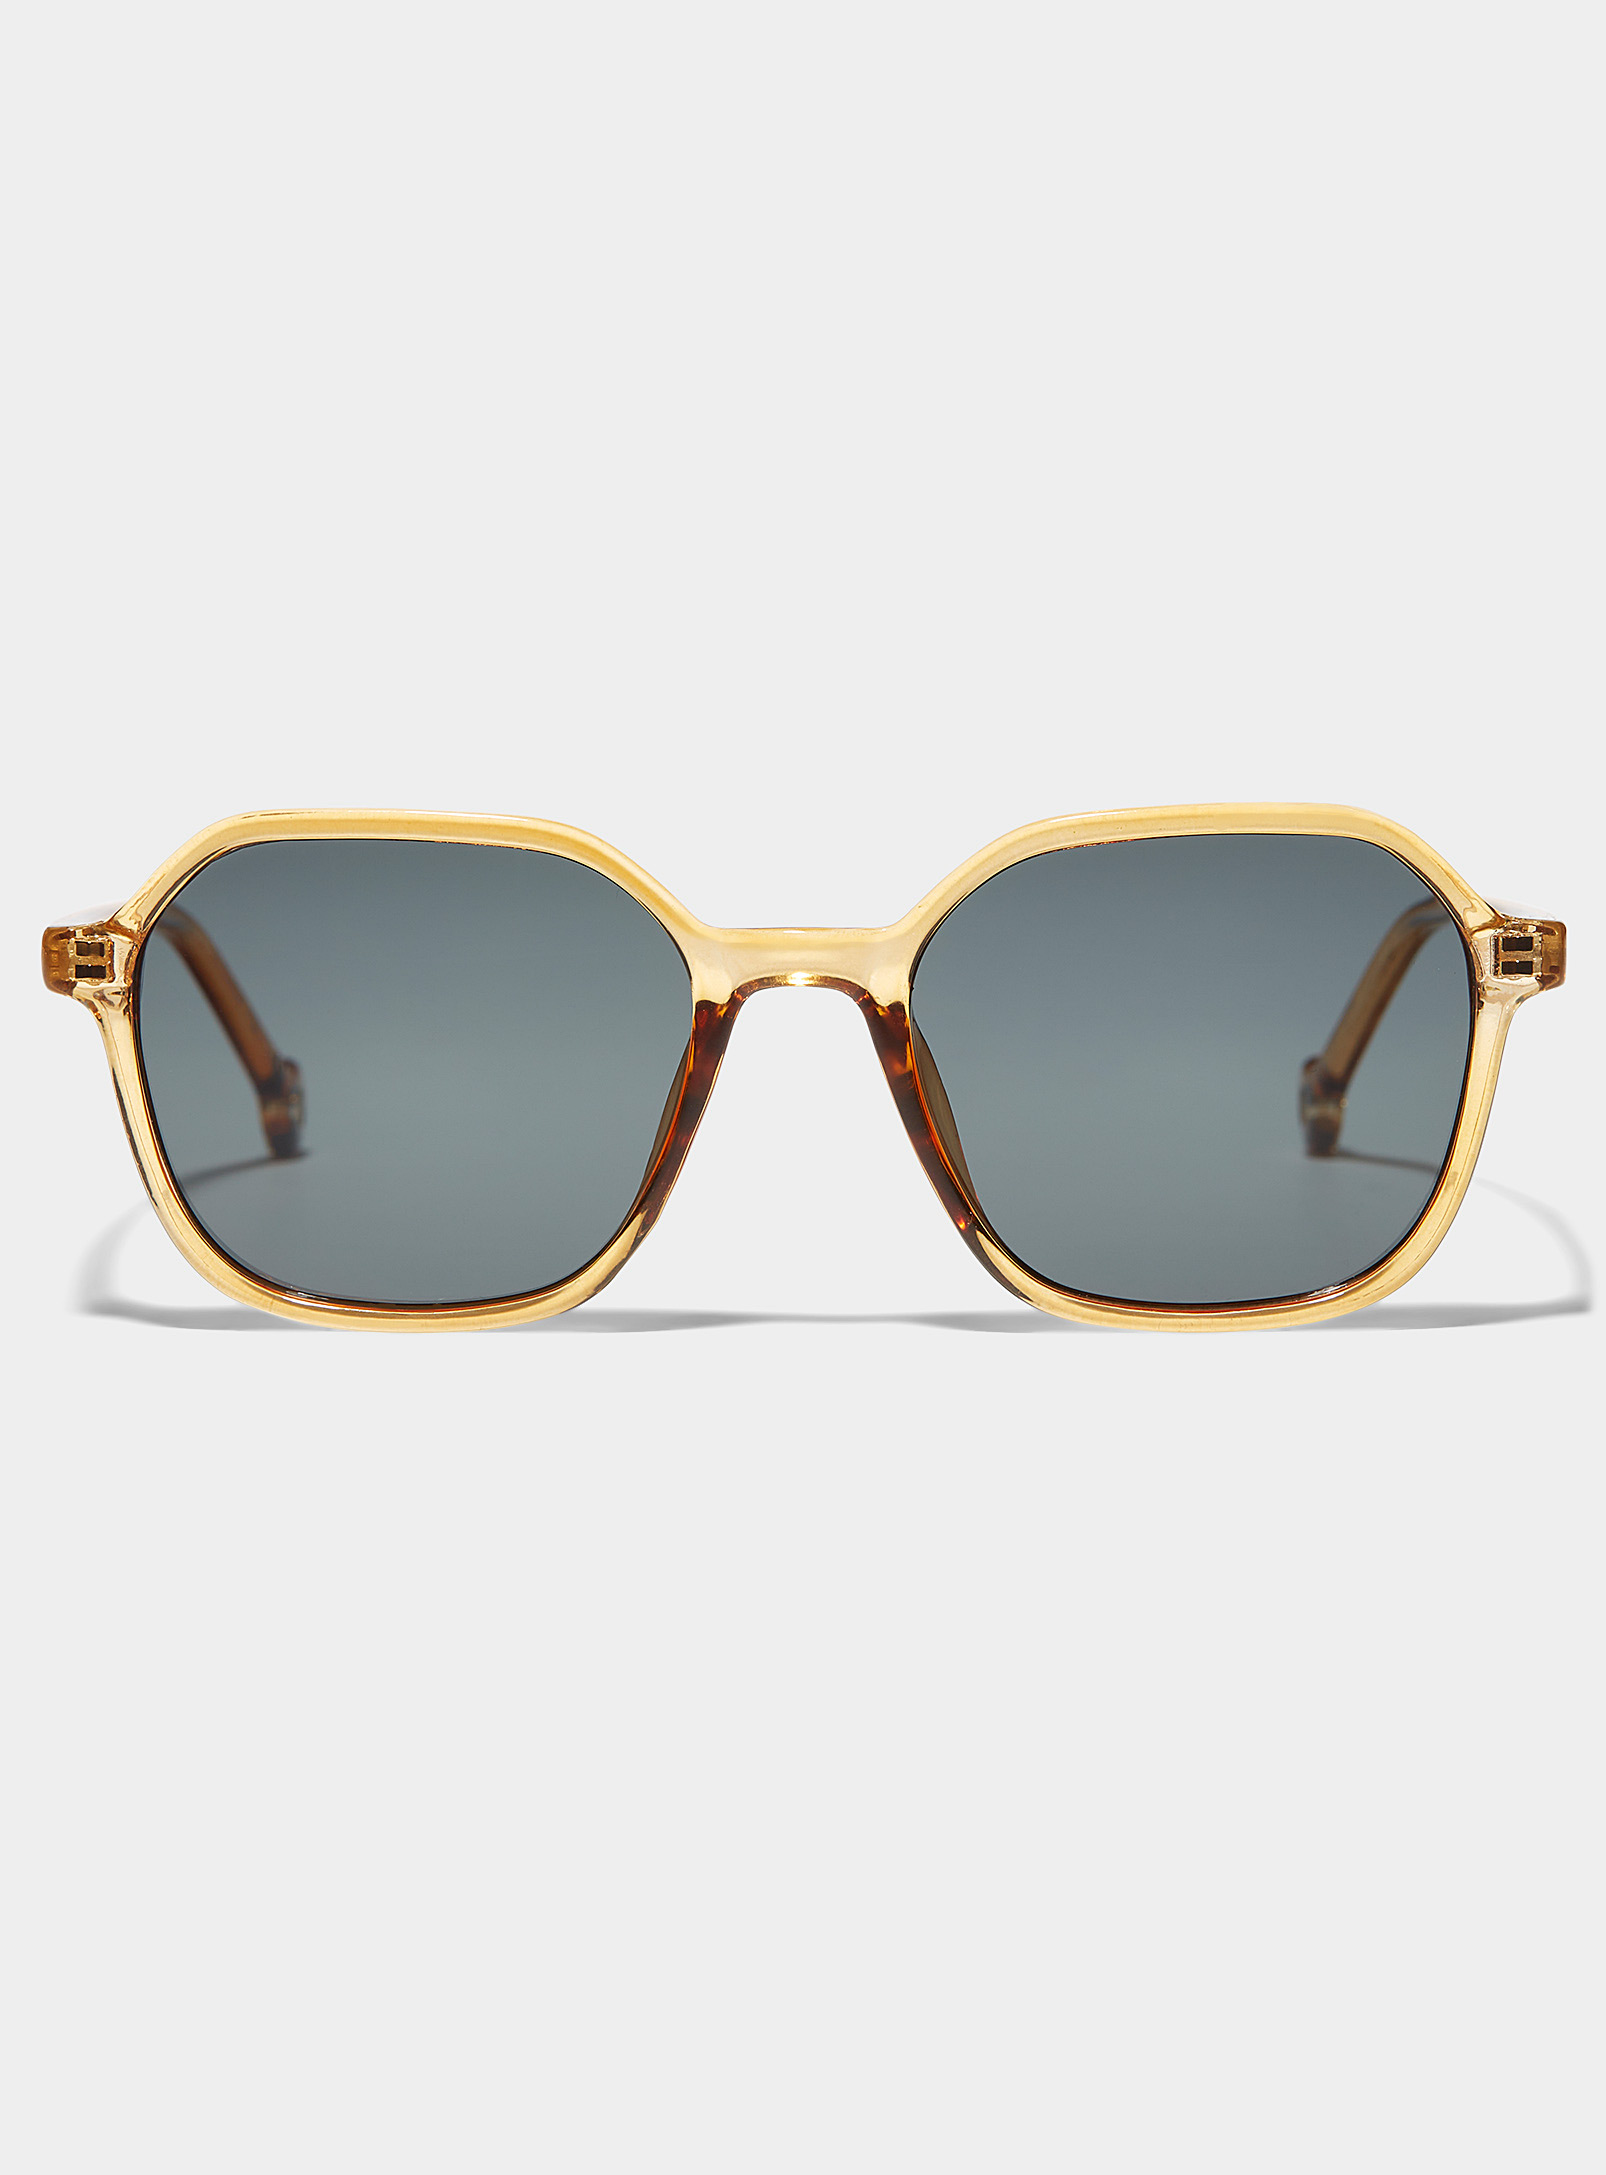 Parafina Valle Sunglasses In Medium Brown